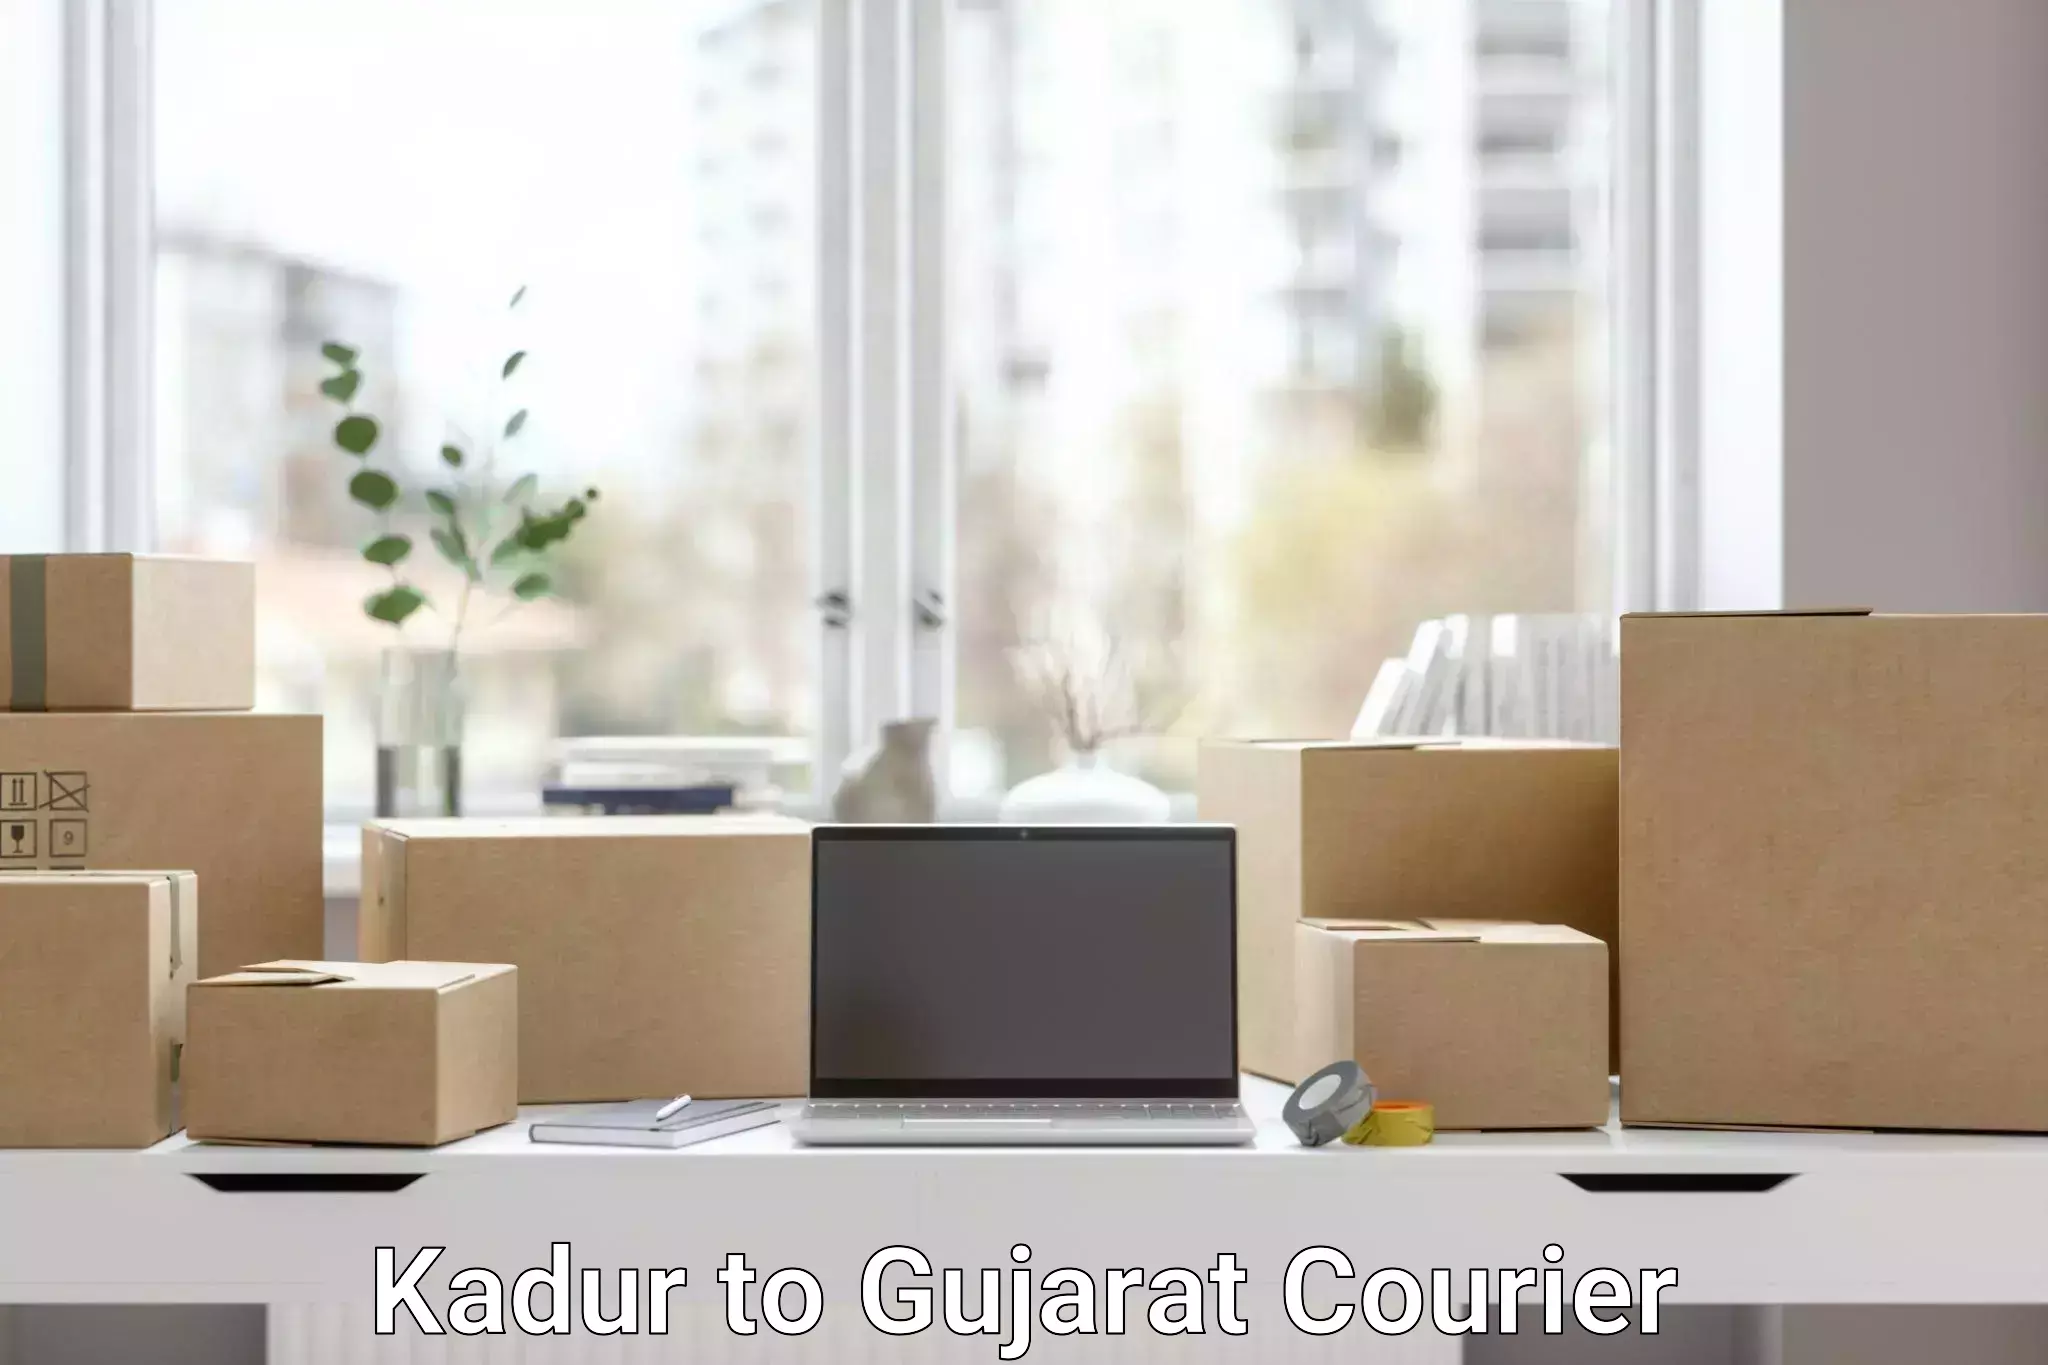 Business shipping needs Kadur to Vadodara